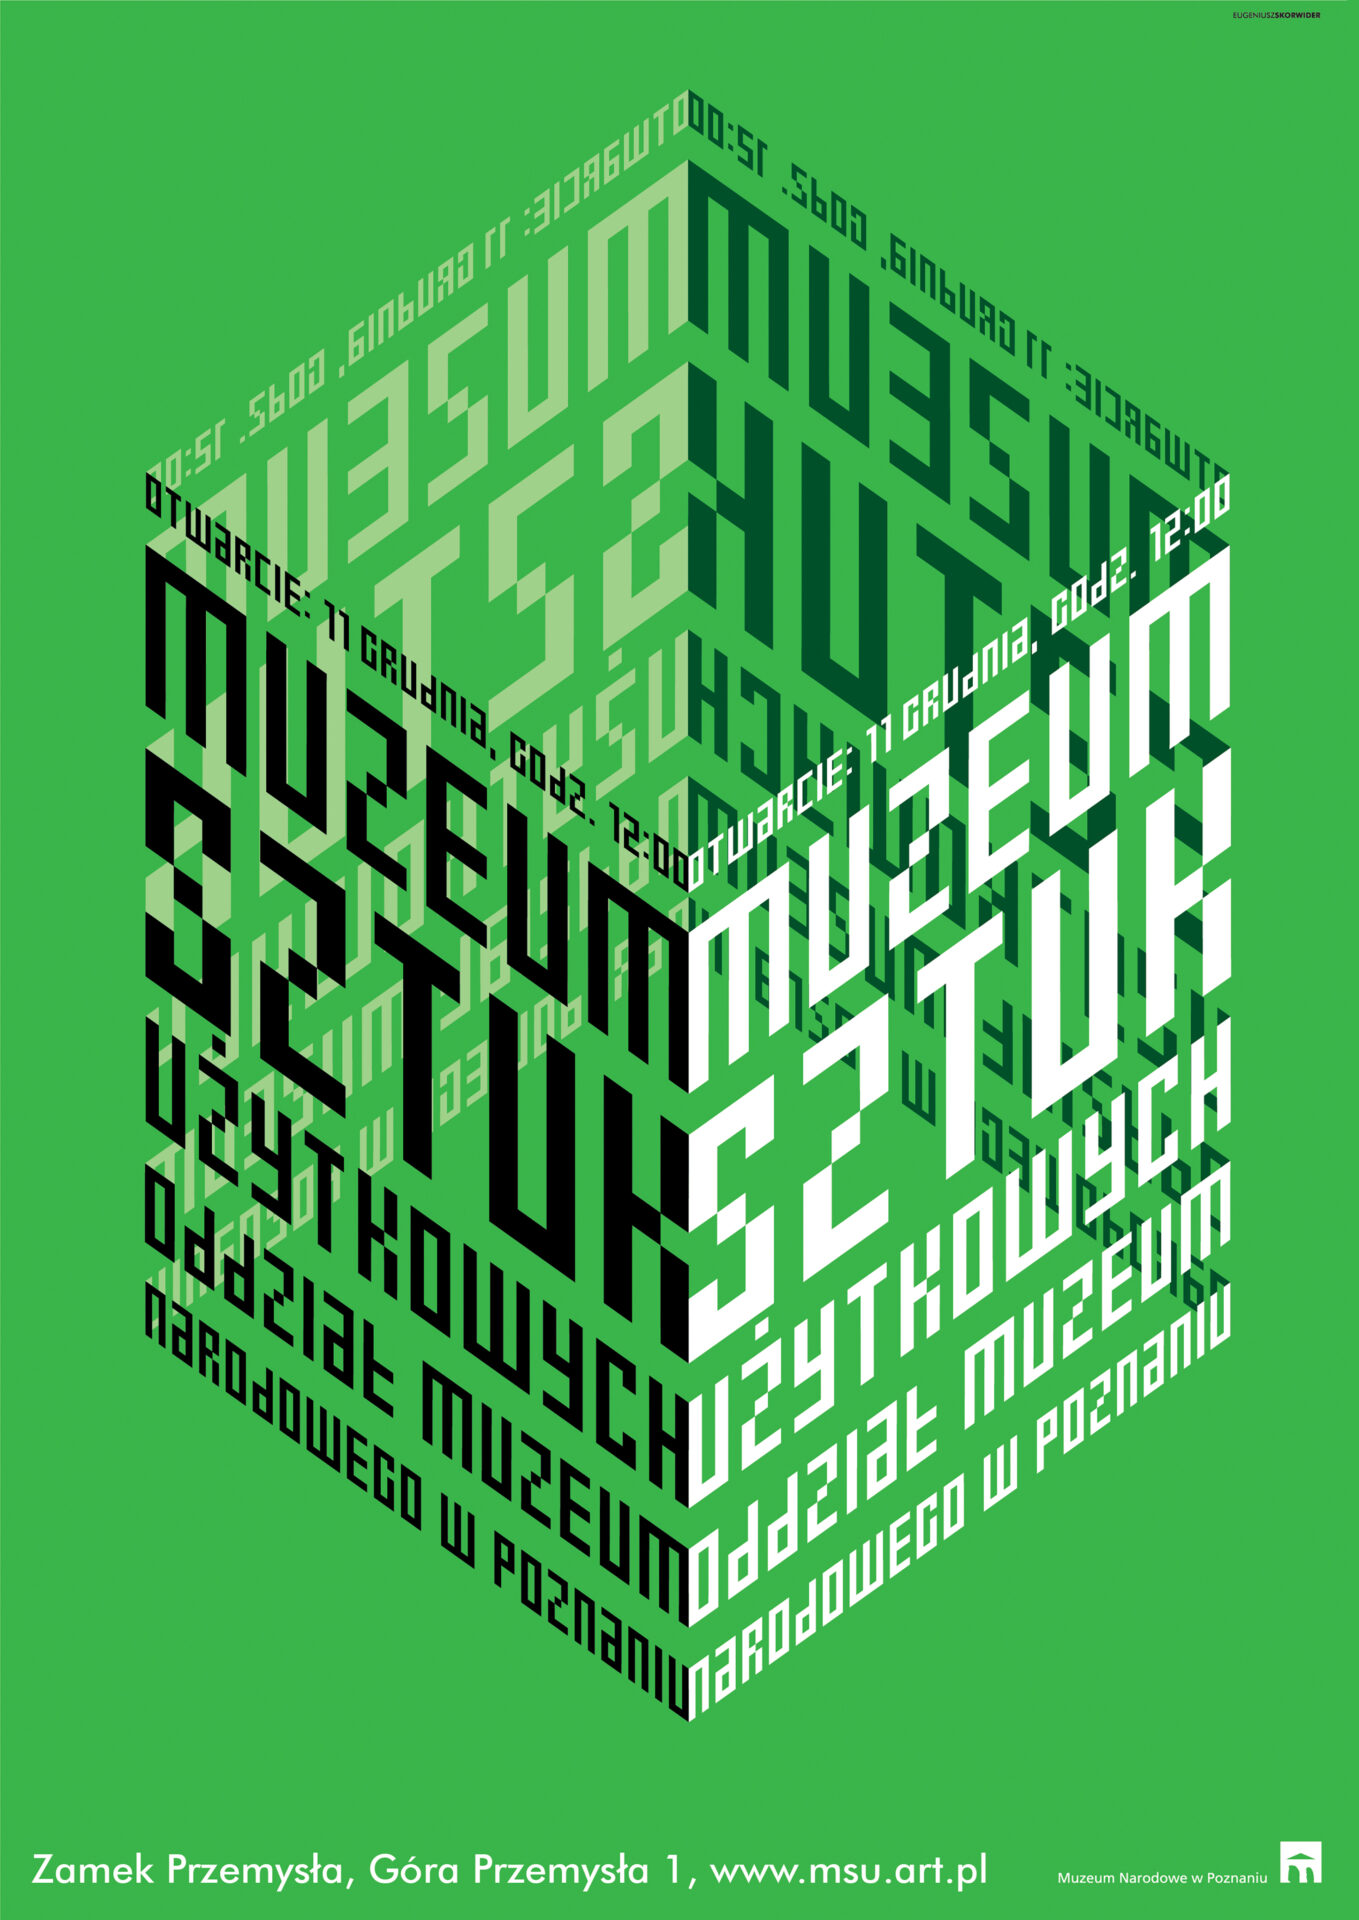 Plakat informujący o otwarciu Muzeum Sztuk Użytkowych w Poznaniu.